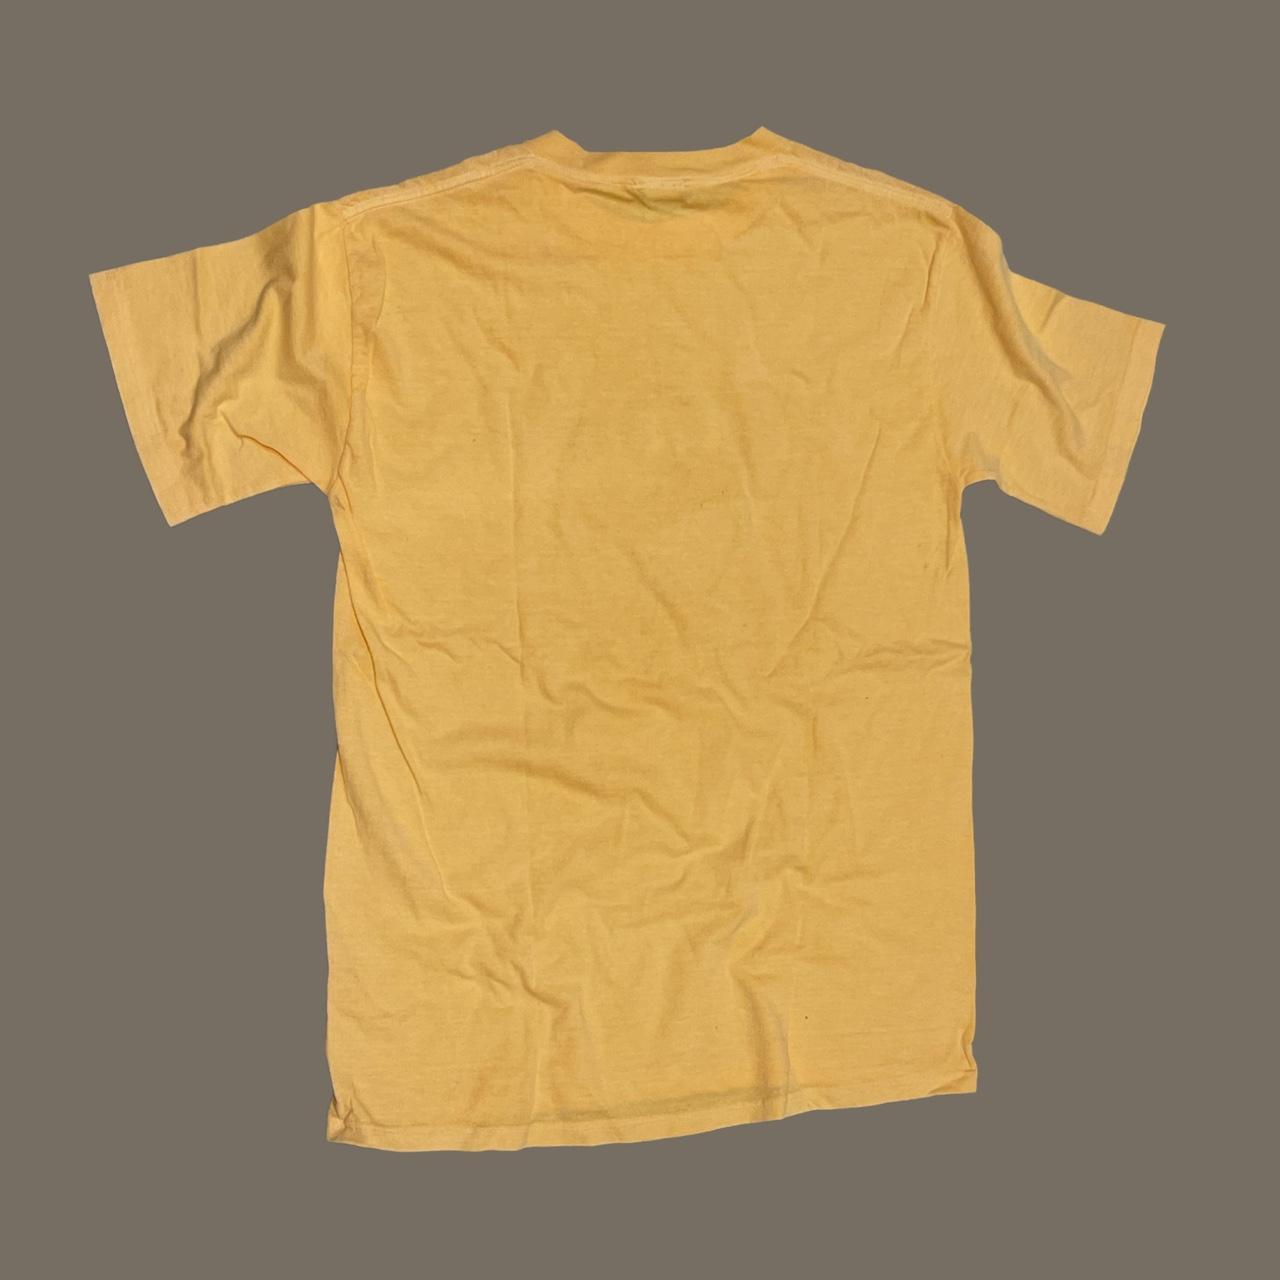 MVMT Men's Yellow and White T-shirt (2)